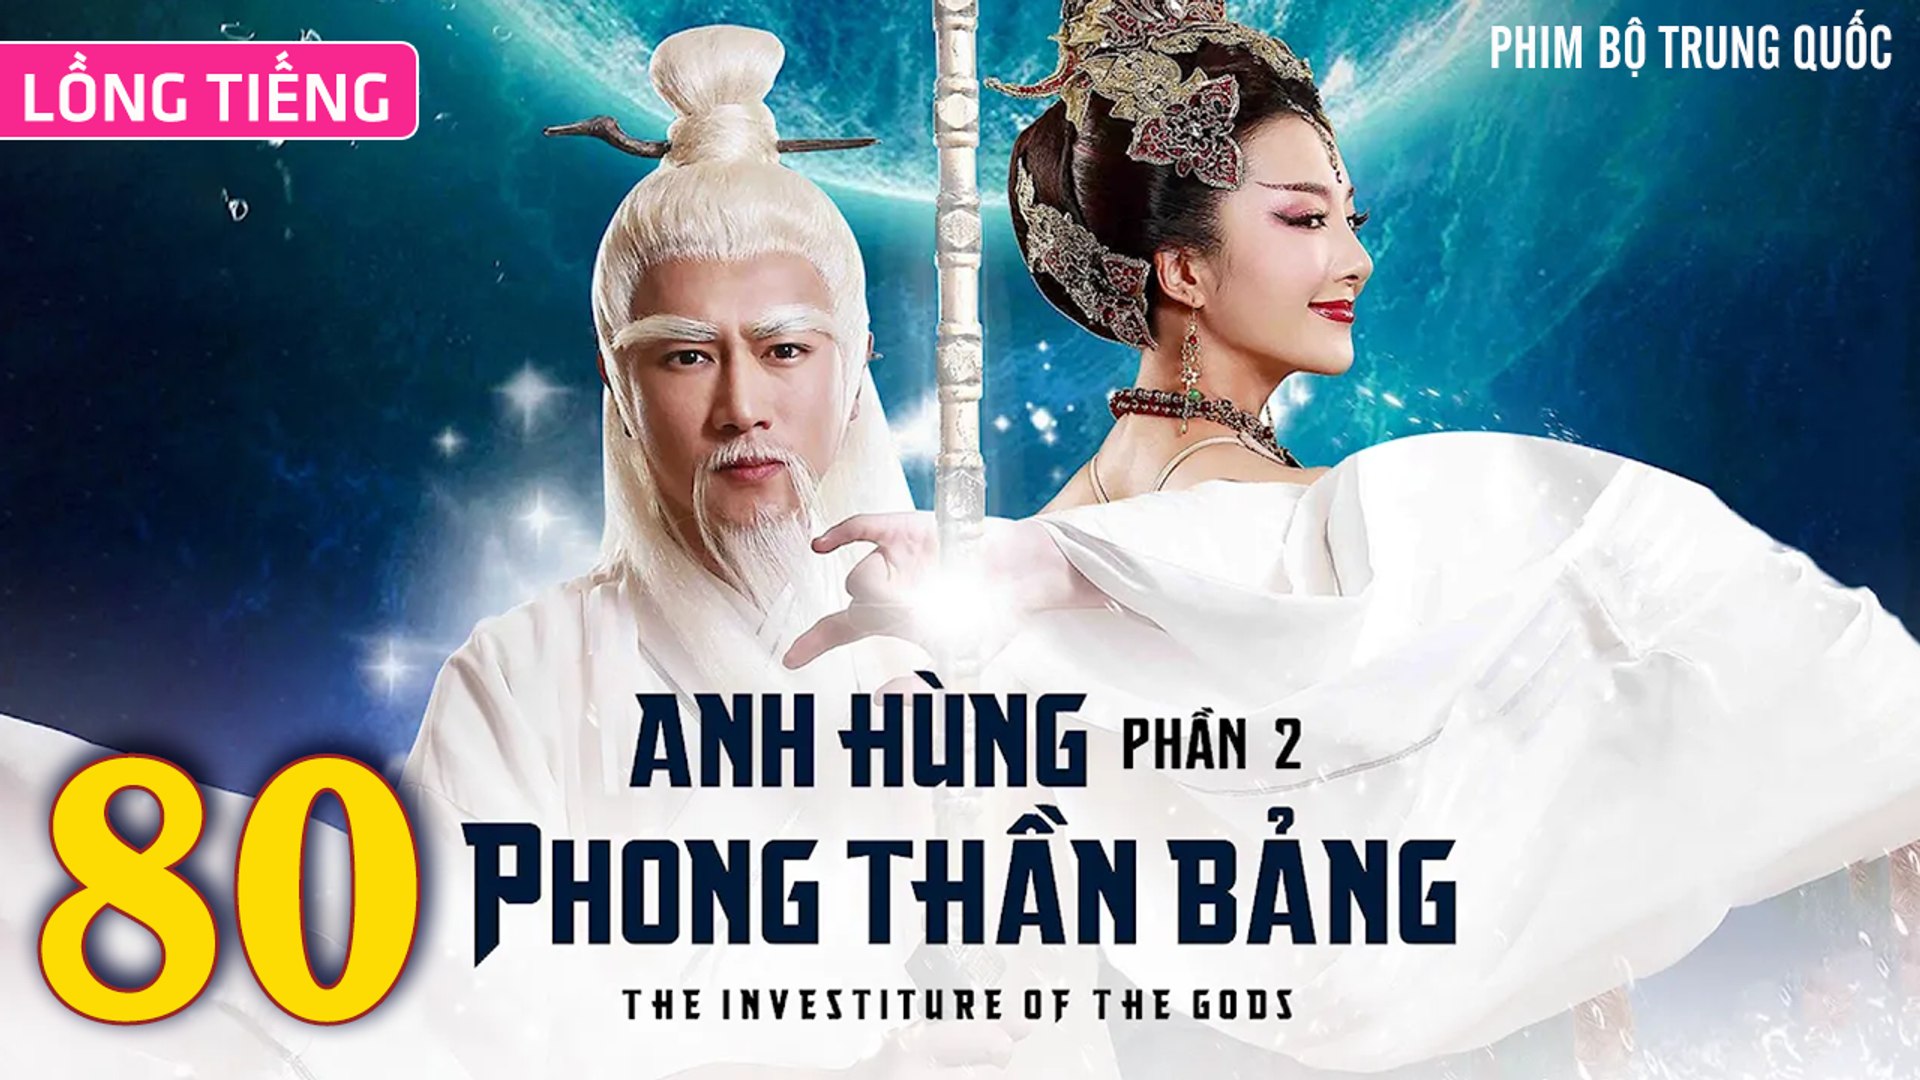 ⁣Phim Bộ Hay: ANH HÙNG PHONG THẦN BẢNG 2 - Tập 80 (Lồng Tiếng) | Phim Bộ Trung Quốc Hay Nhất 2023